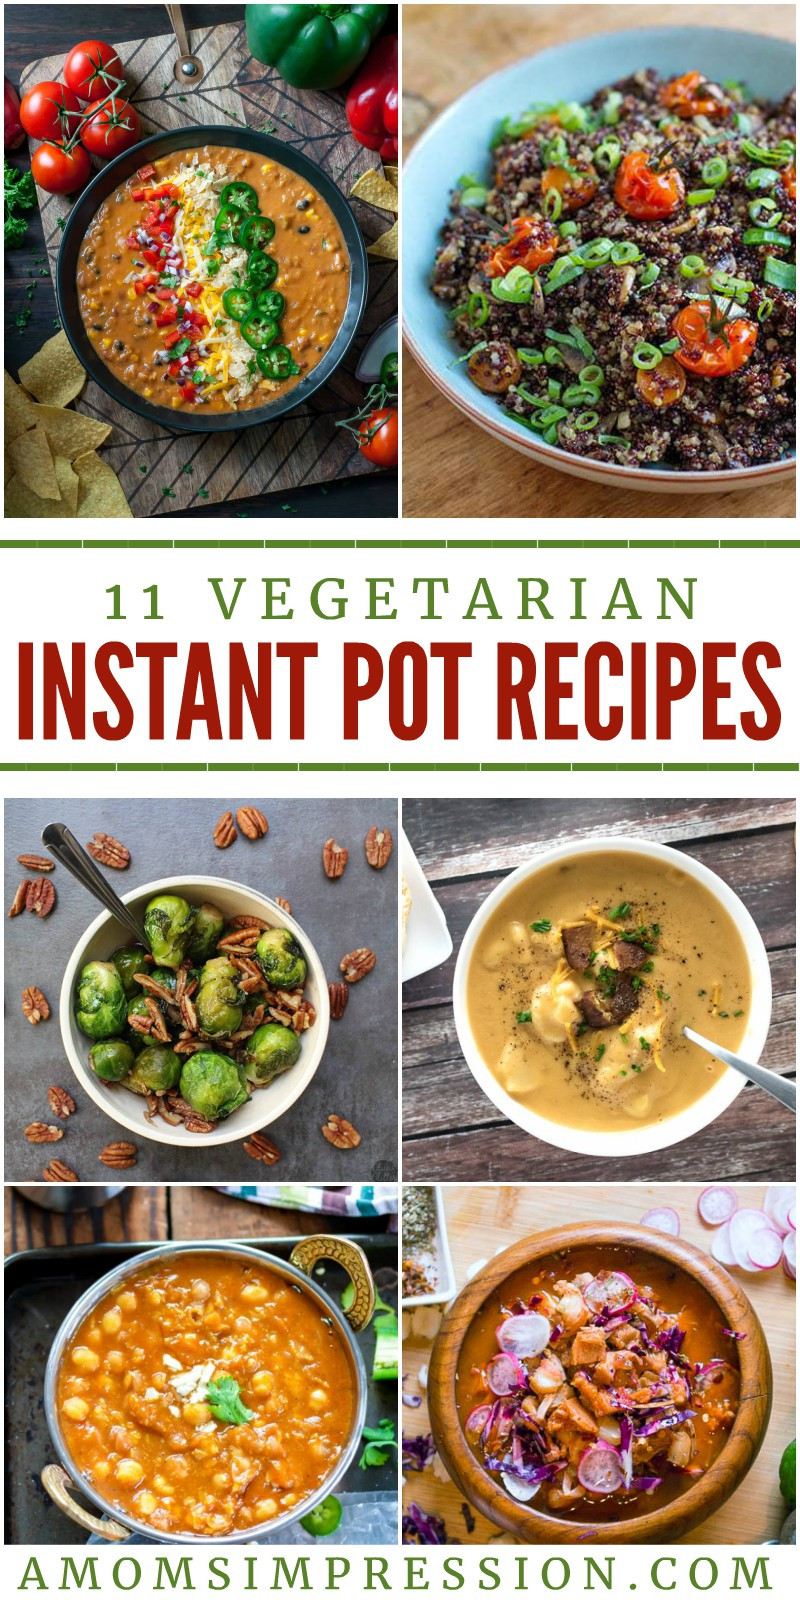 Healthy Instant Pot Recipes Vegetarian
 11 Exciting Ve arian Instant Pot Recipes Everyone will Love